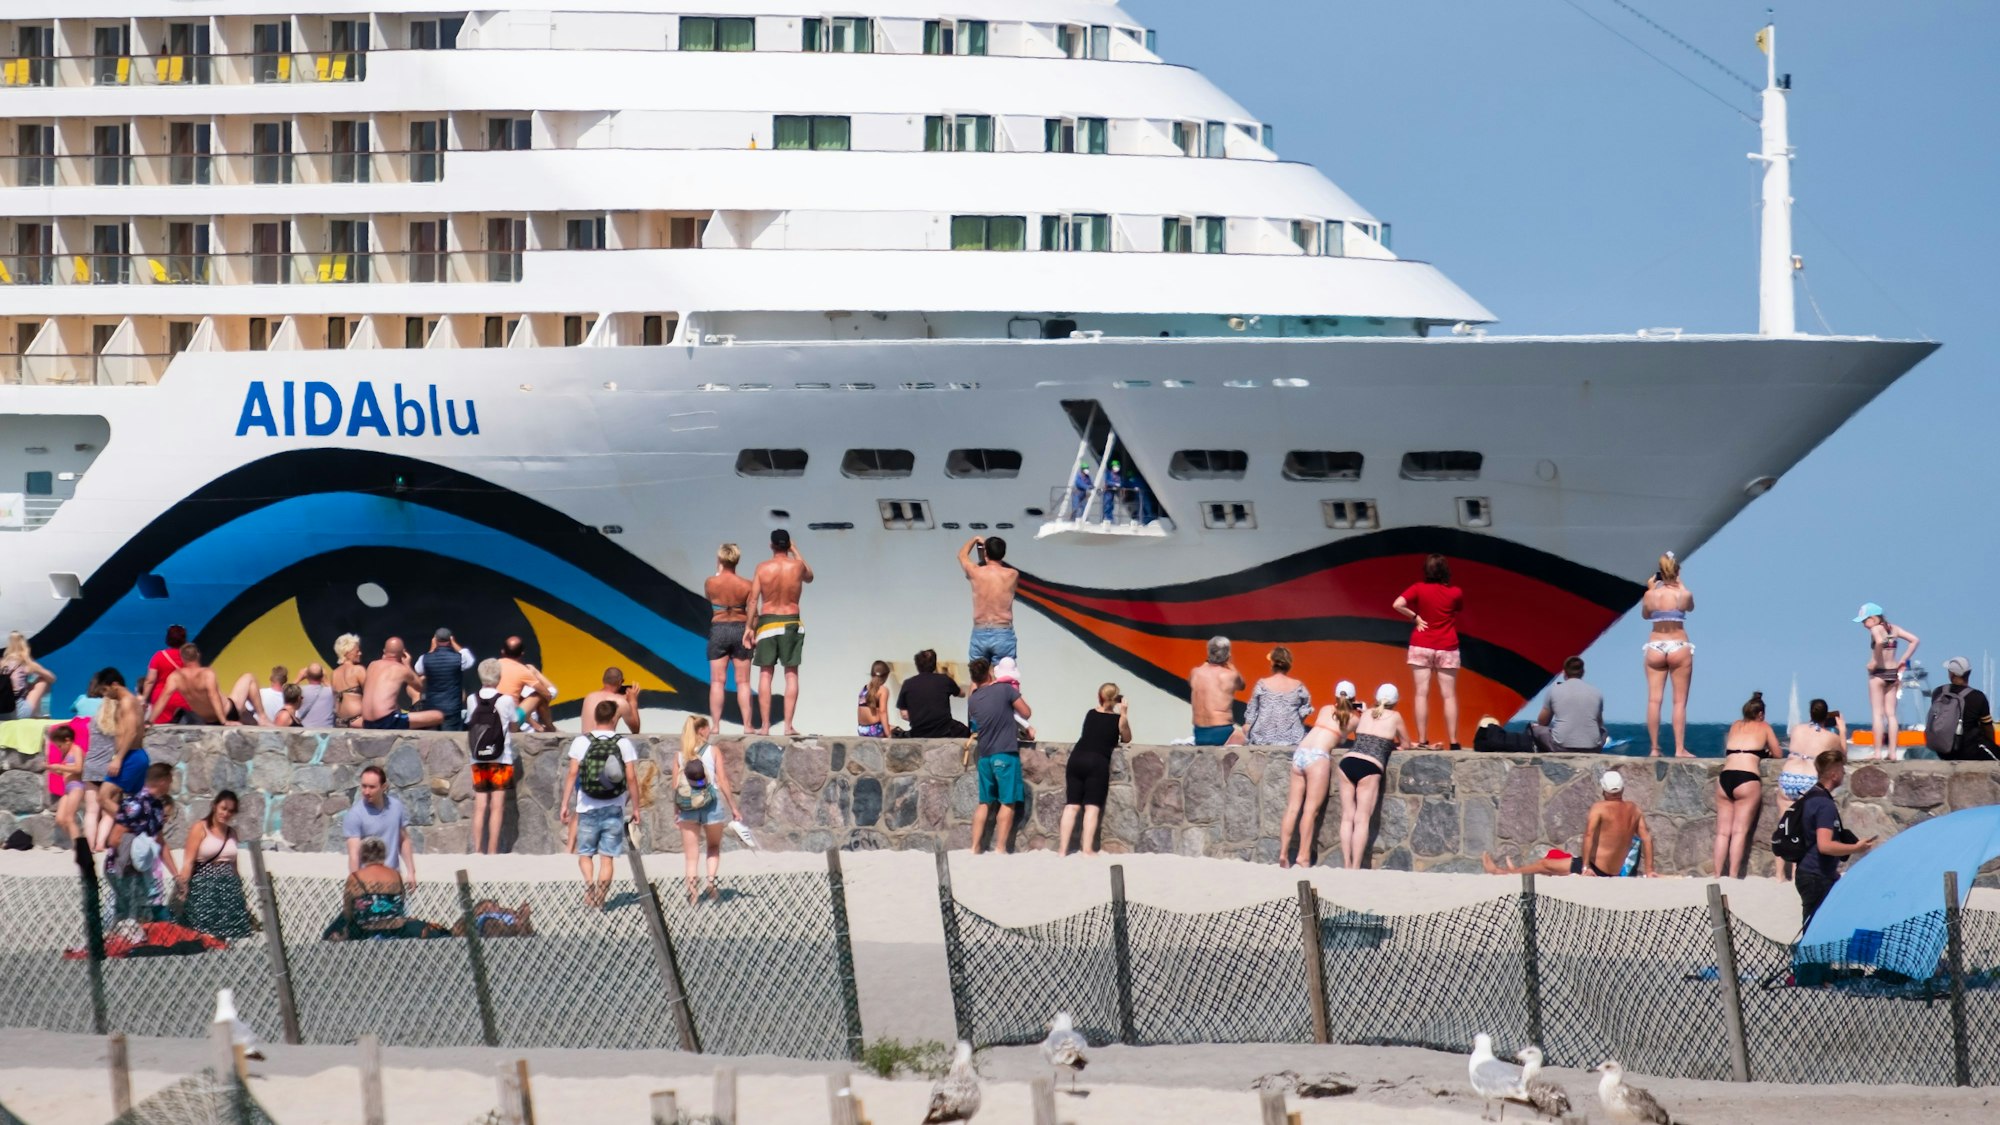 Die AIDAblu der Reederei Aida Cruises kommt ohne Passagiere im Ostseebad Warnemünde an.